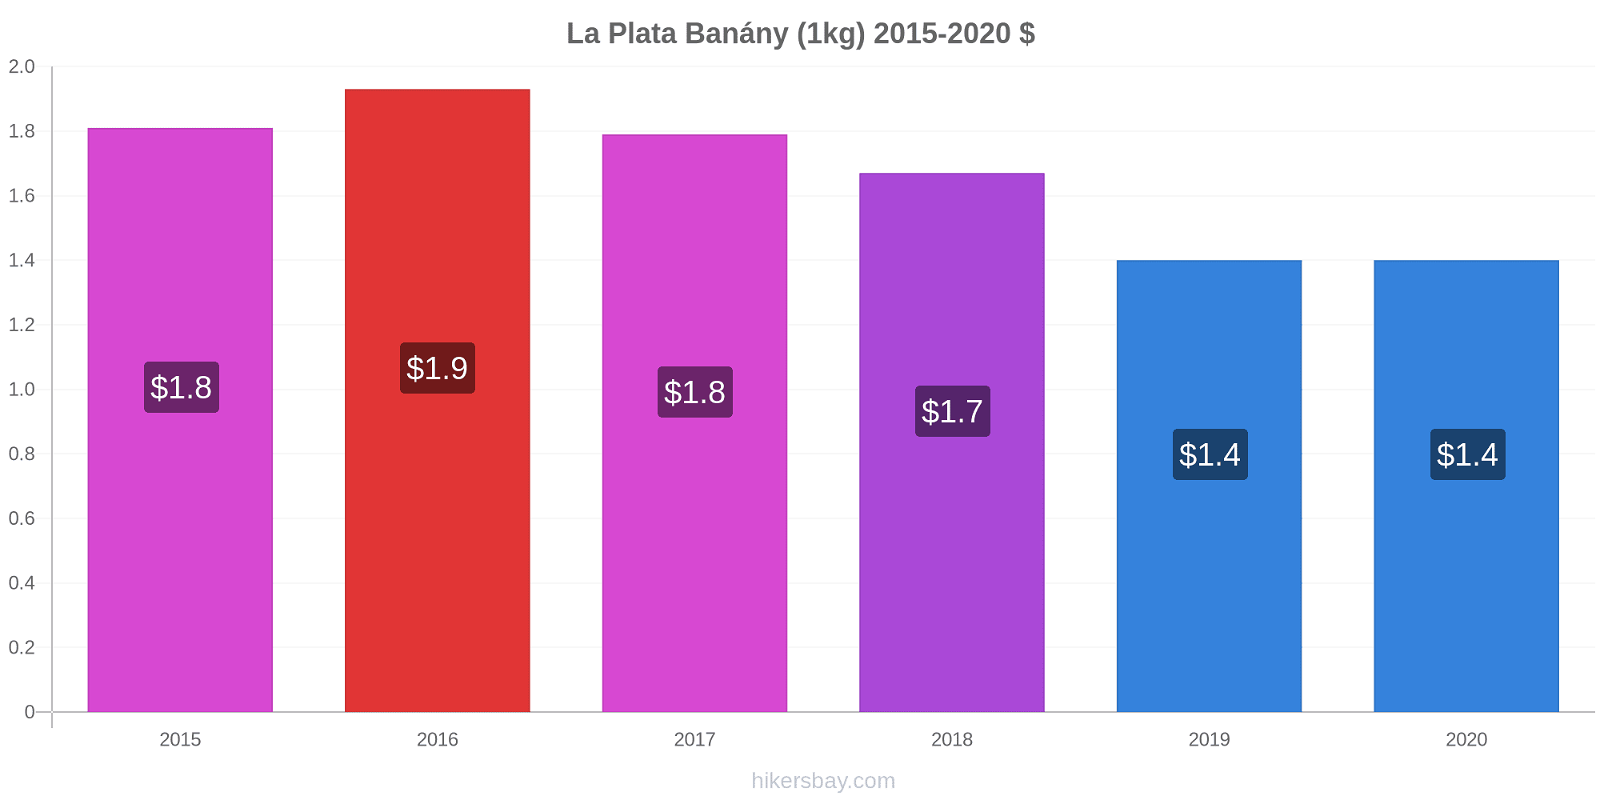 La Plata změny cen Banány (1kg) hikersbay.com